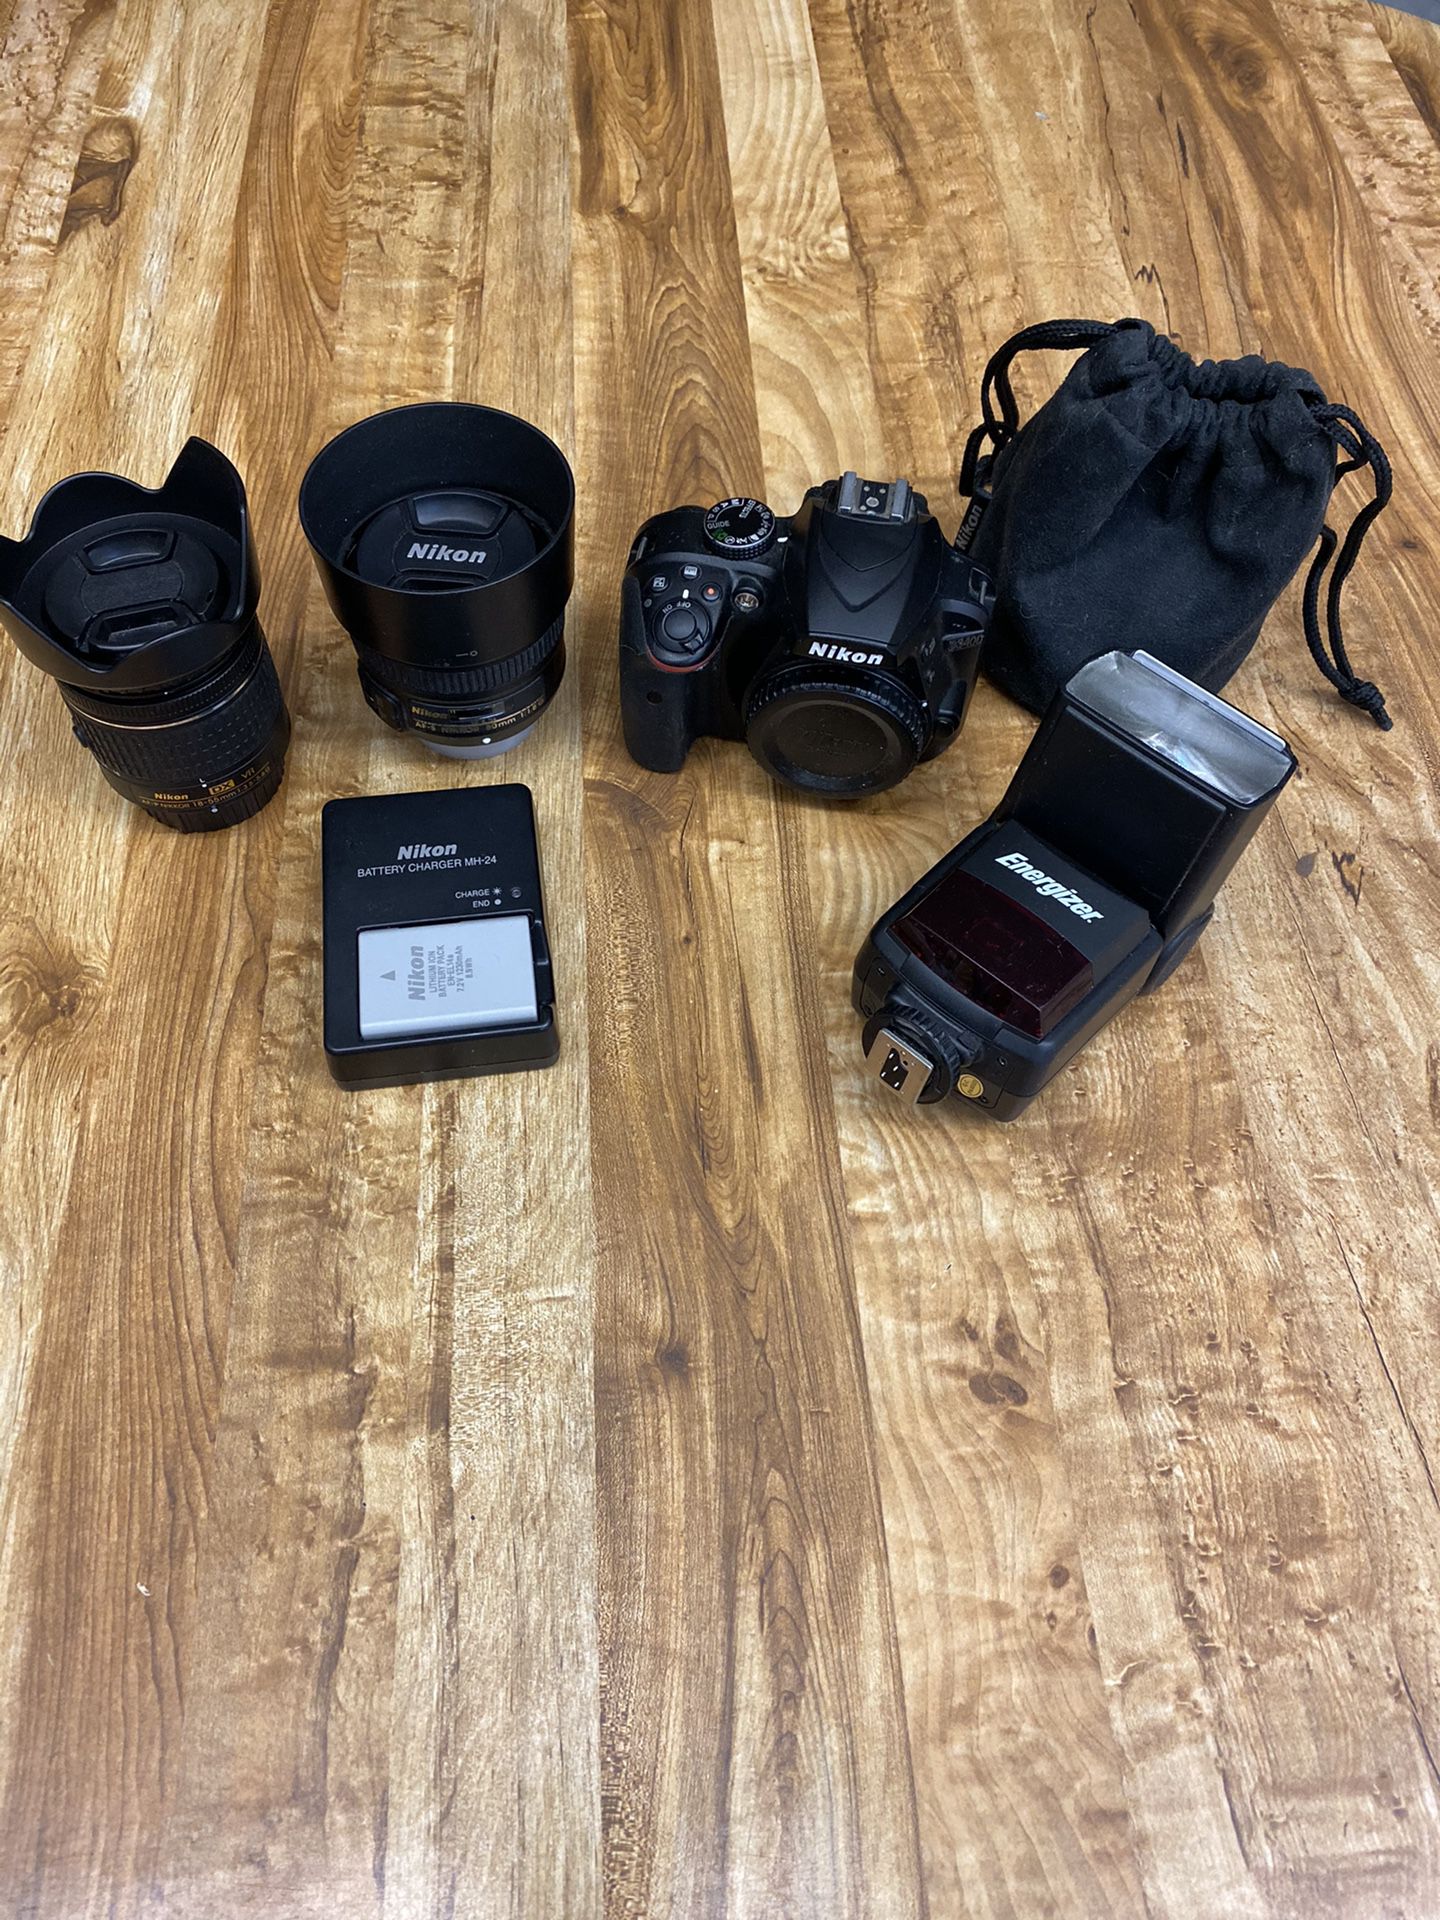 Nikon d3400 DSLR with 18-55mm & 50mm bundle